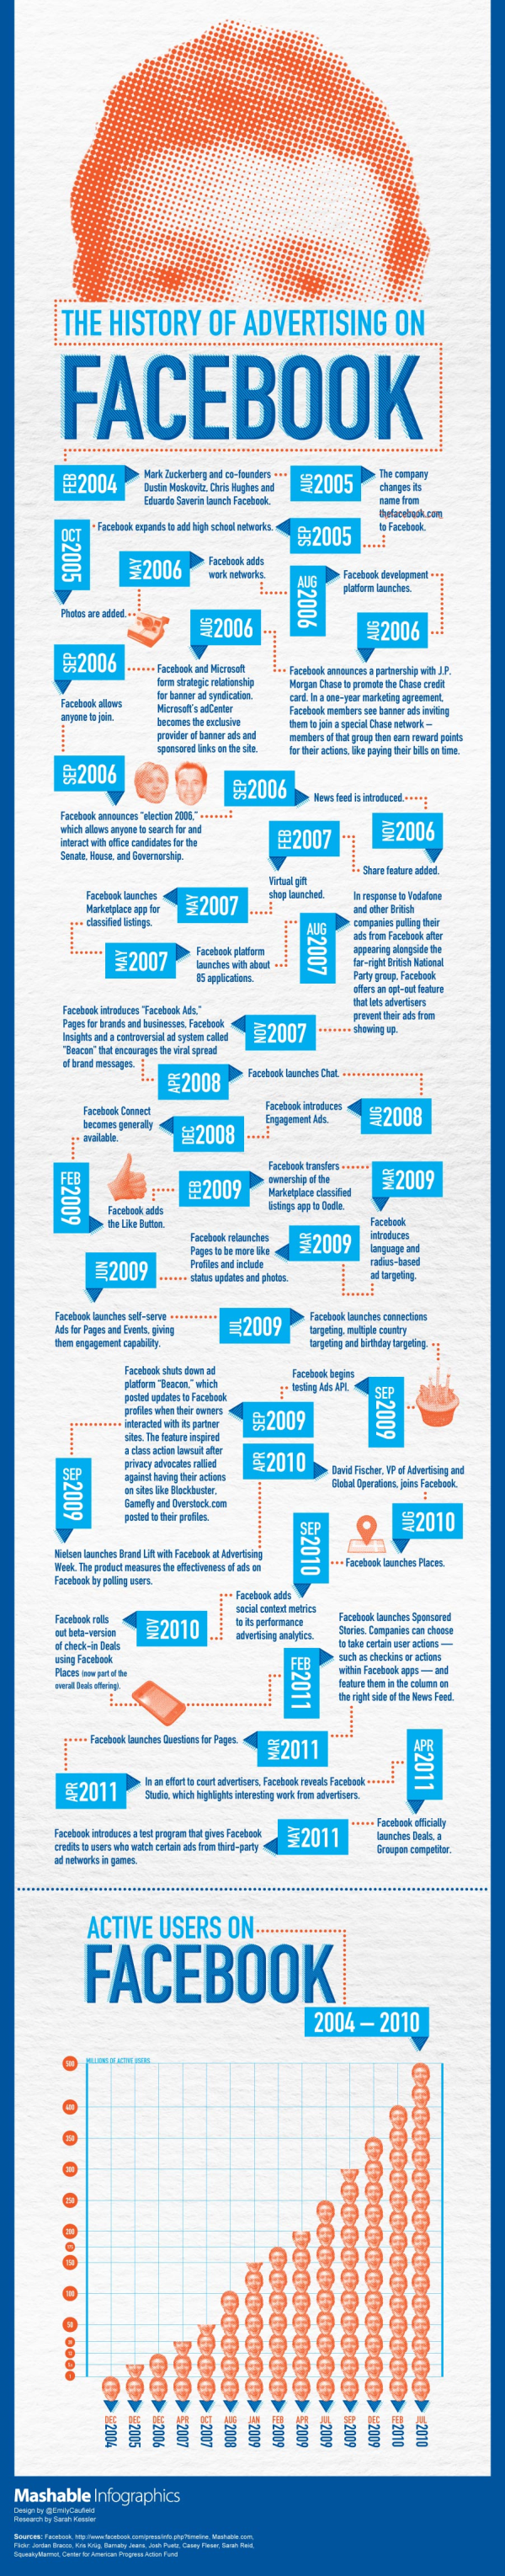 facebook advertising mashable infographic 902 resized 600